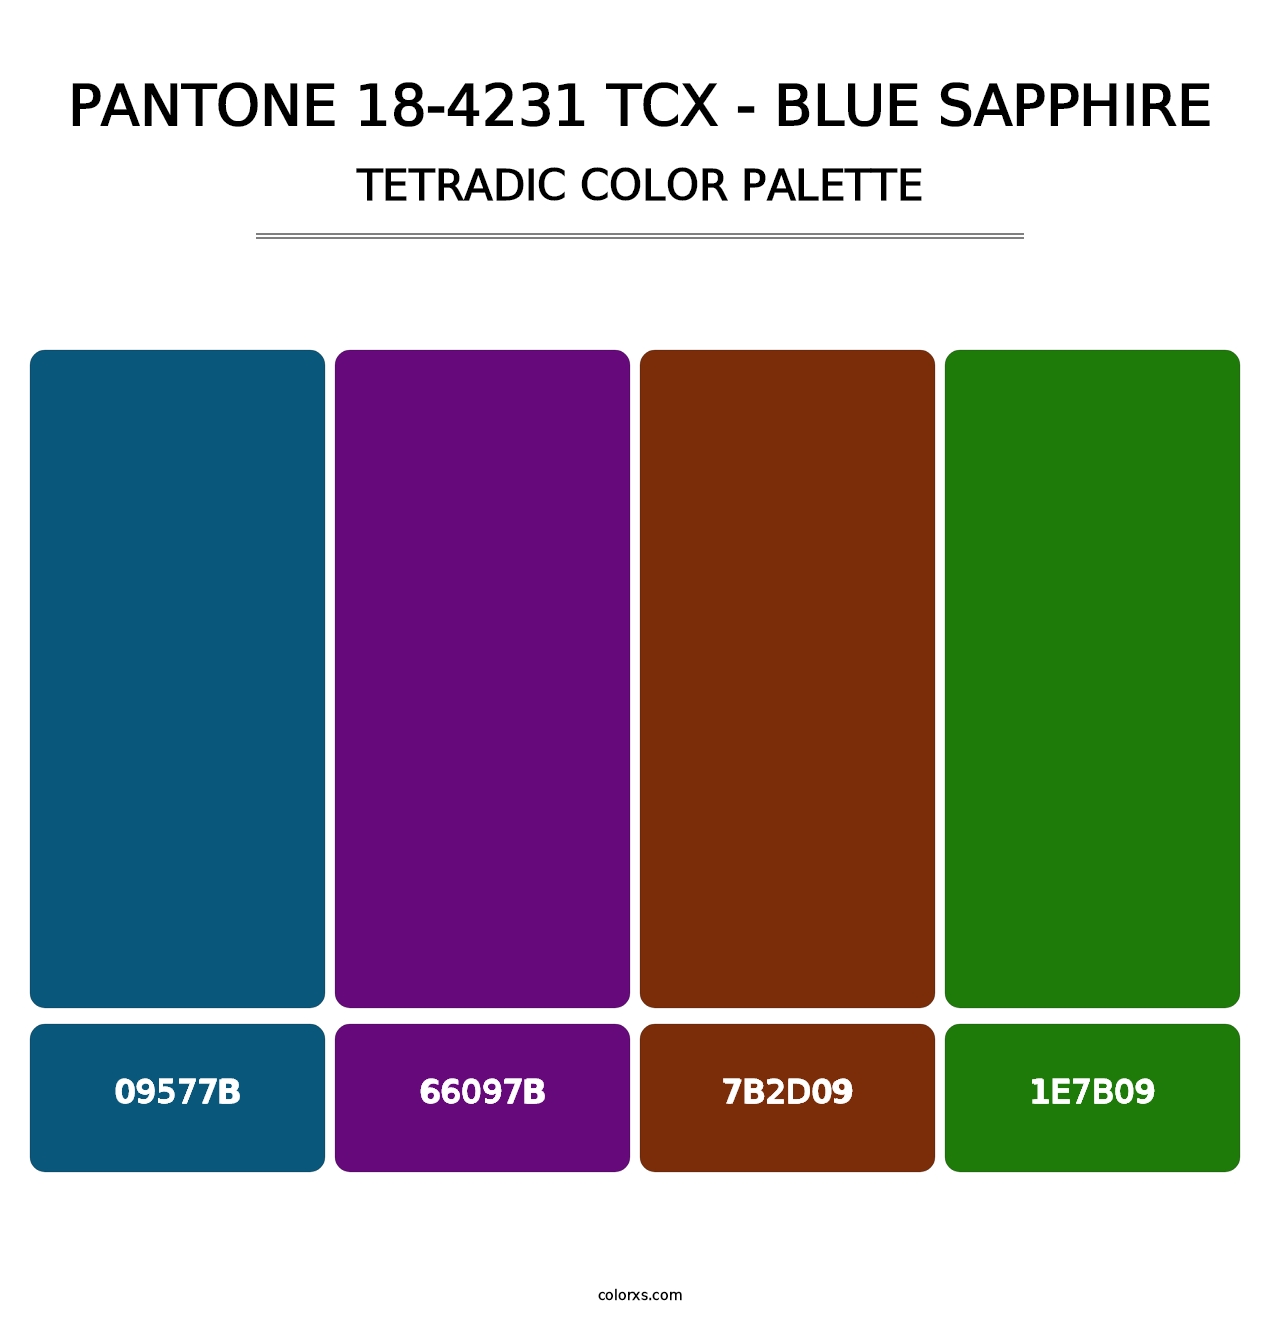 PANTONE 18-4231 TCX - Blue Sapphire - Tetradic Color Palette